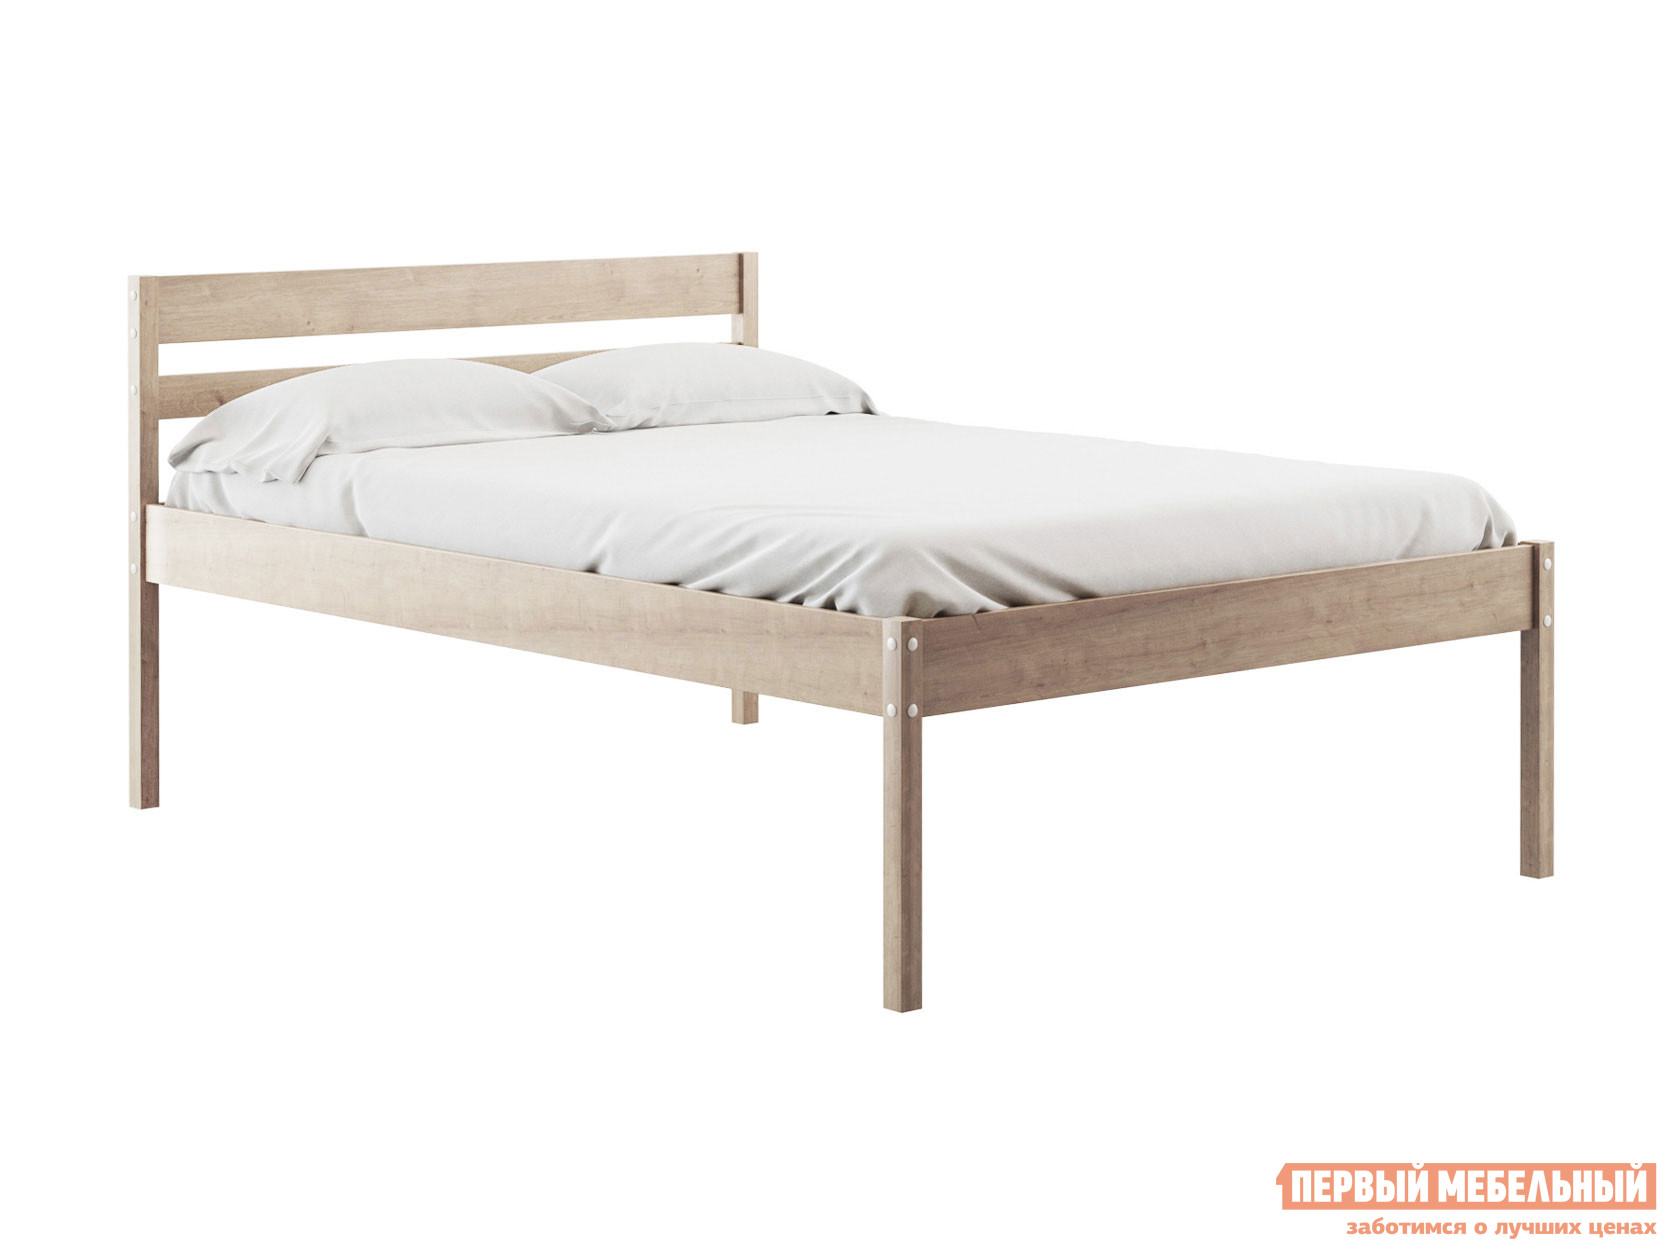 Двуспальная кровать  Эко Натуральный, 140х200 см, 41 см